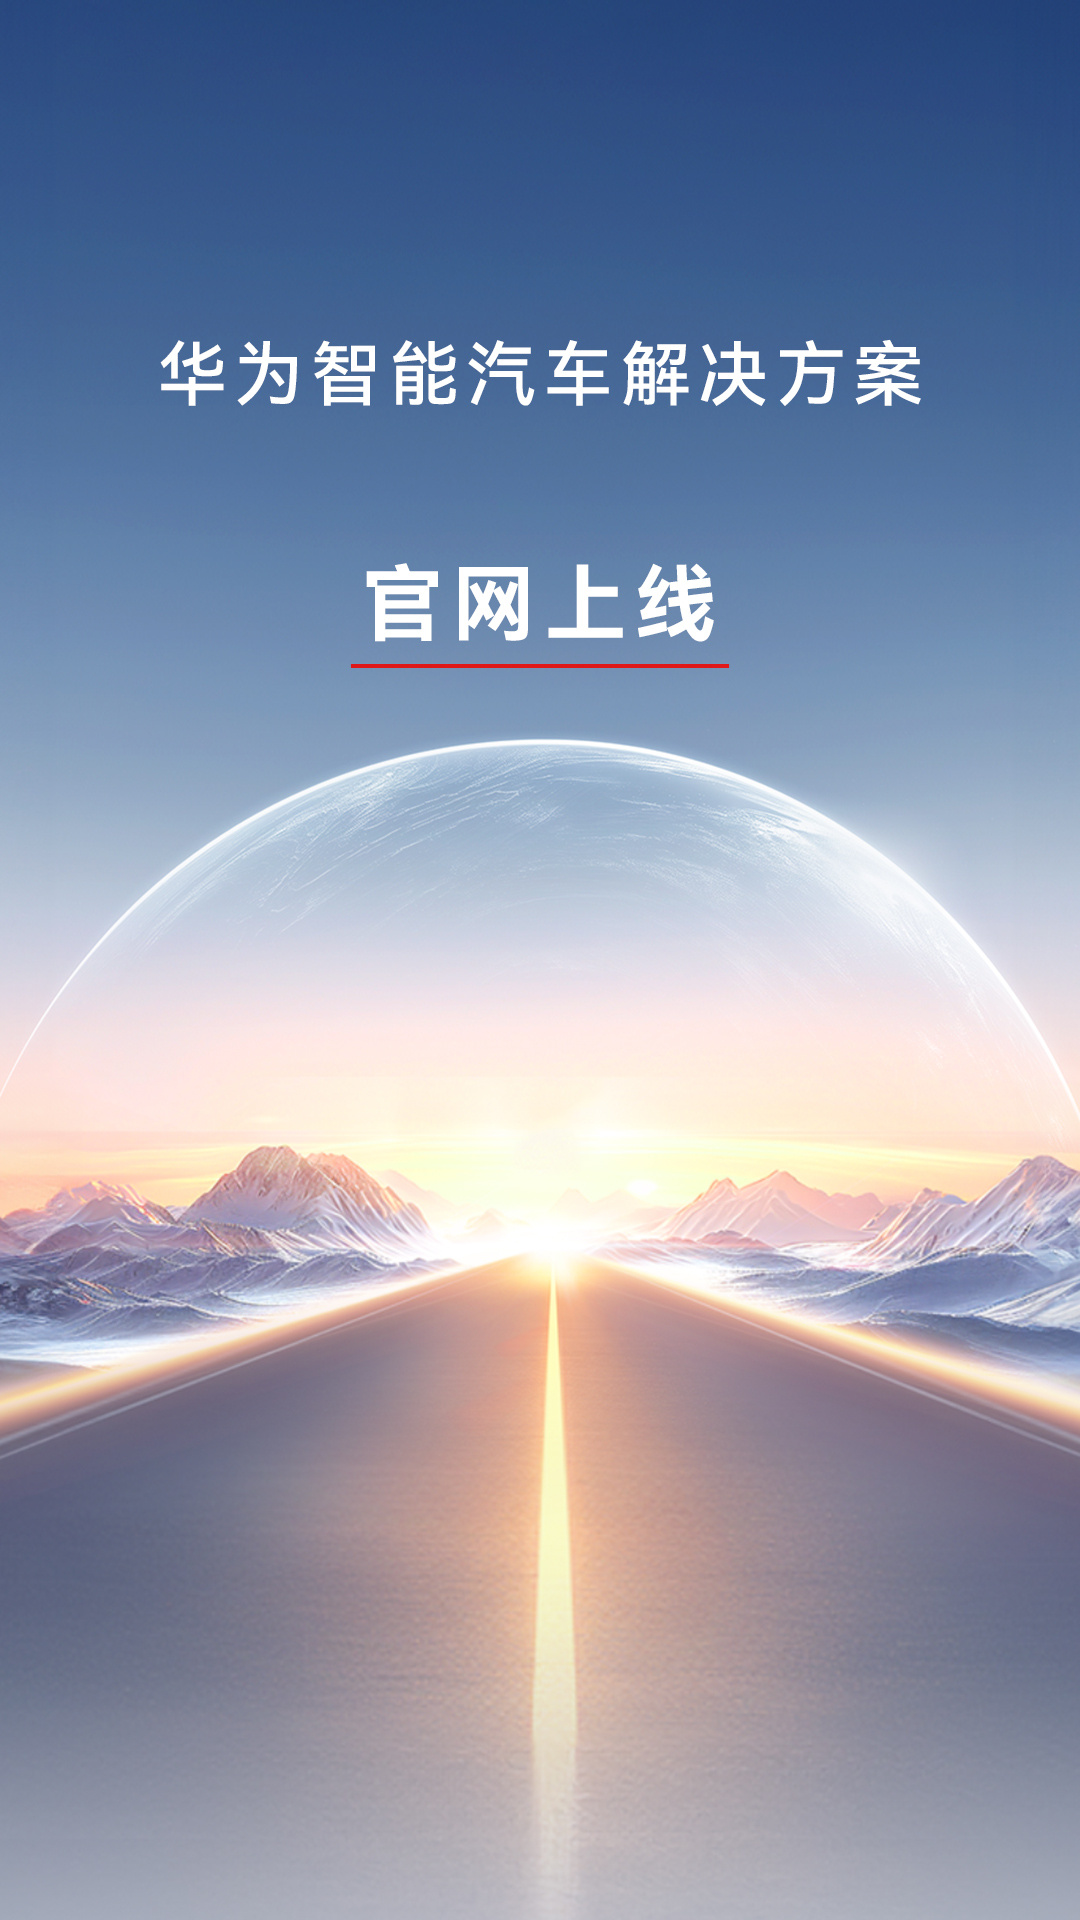 华为智能汽车解决方案官网上线，4 月 24 日举办新品发布会